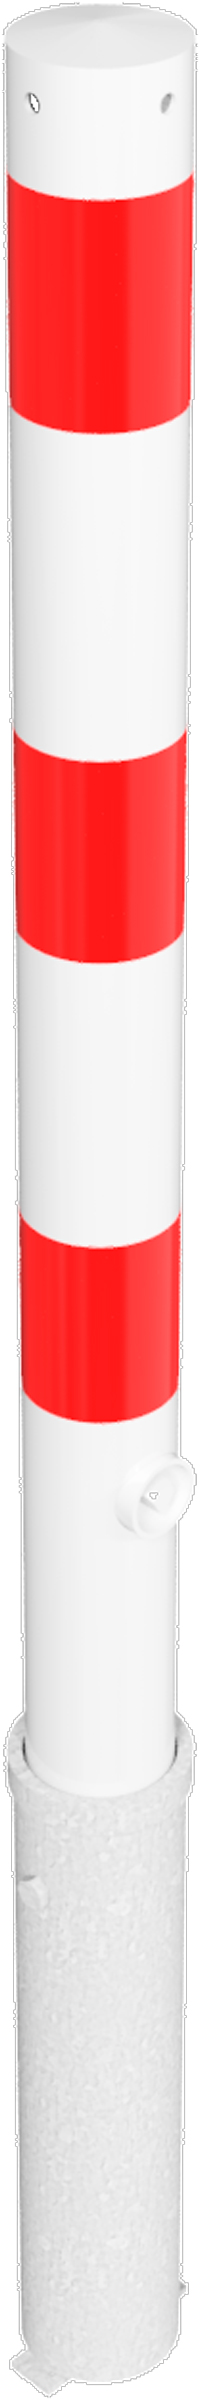 Schake Absperrpfosten HD Ø 76 mm weiß | rot